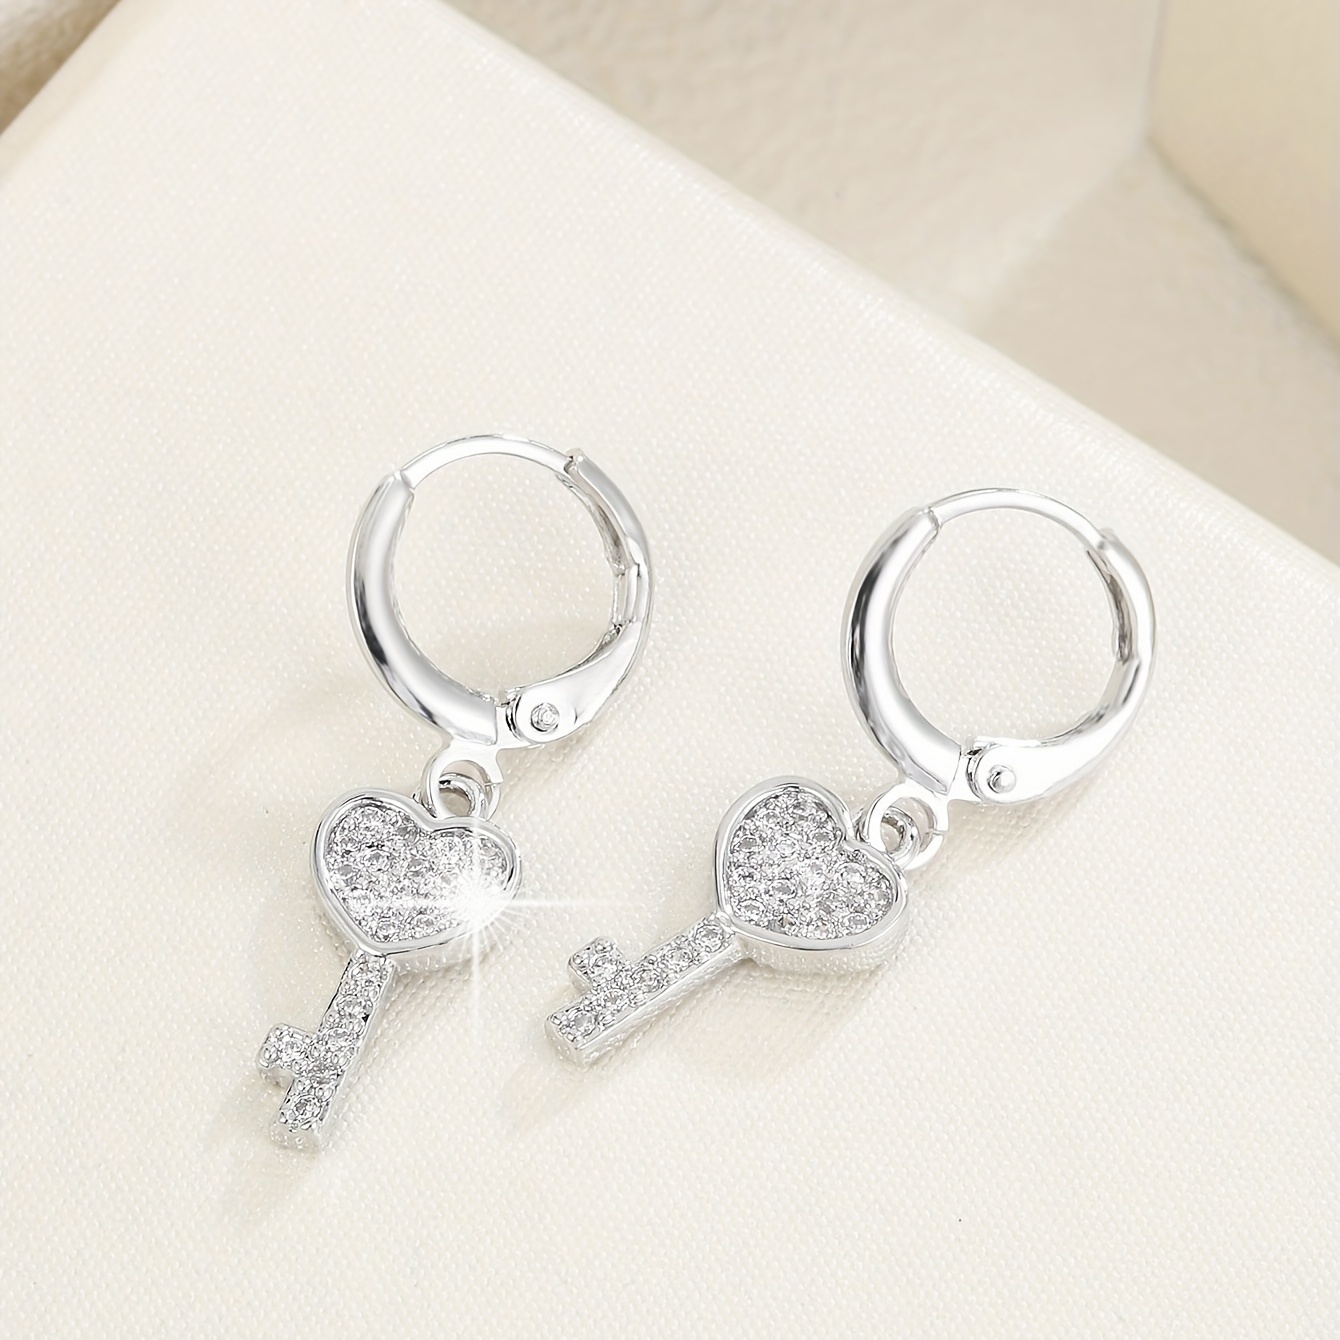 Hoop Earrings Key Lock Design Copper Earrings Korean Japanese